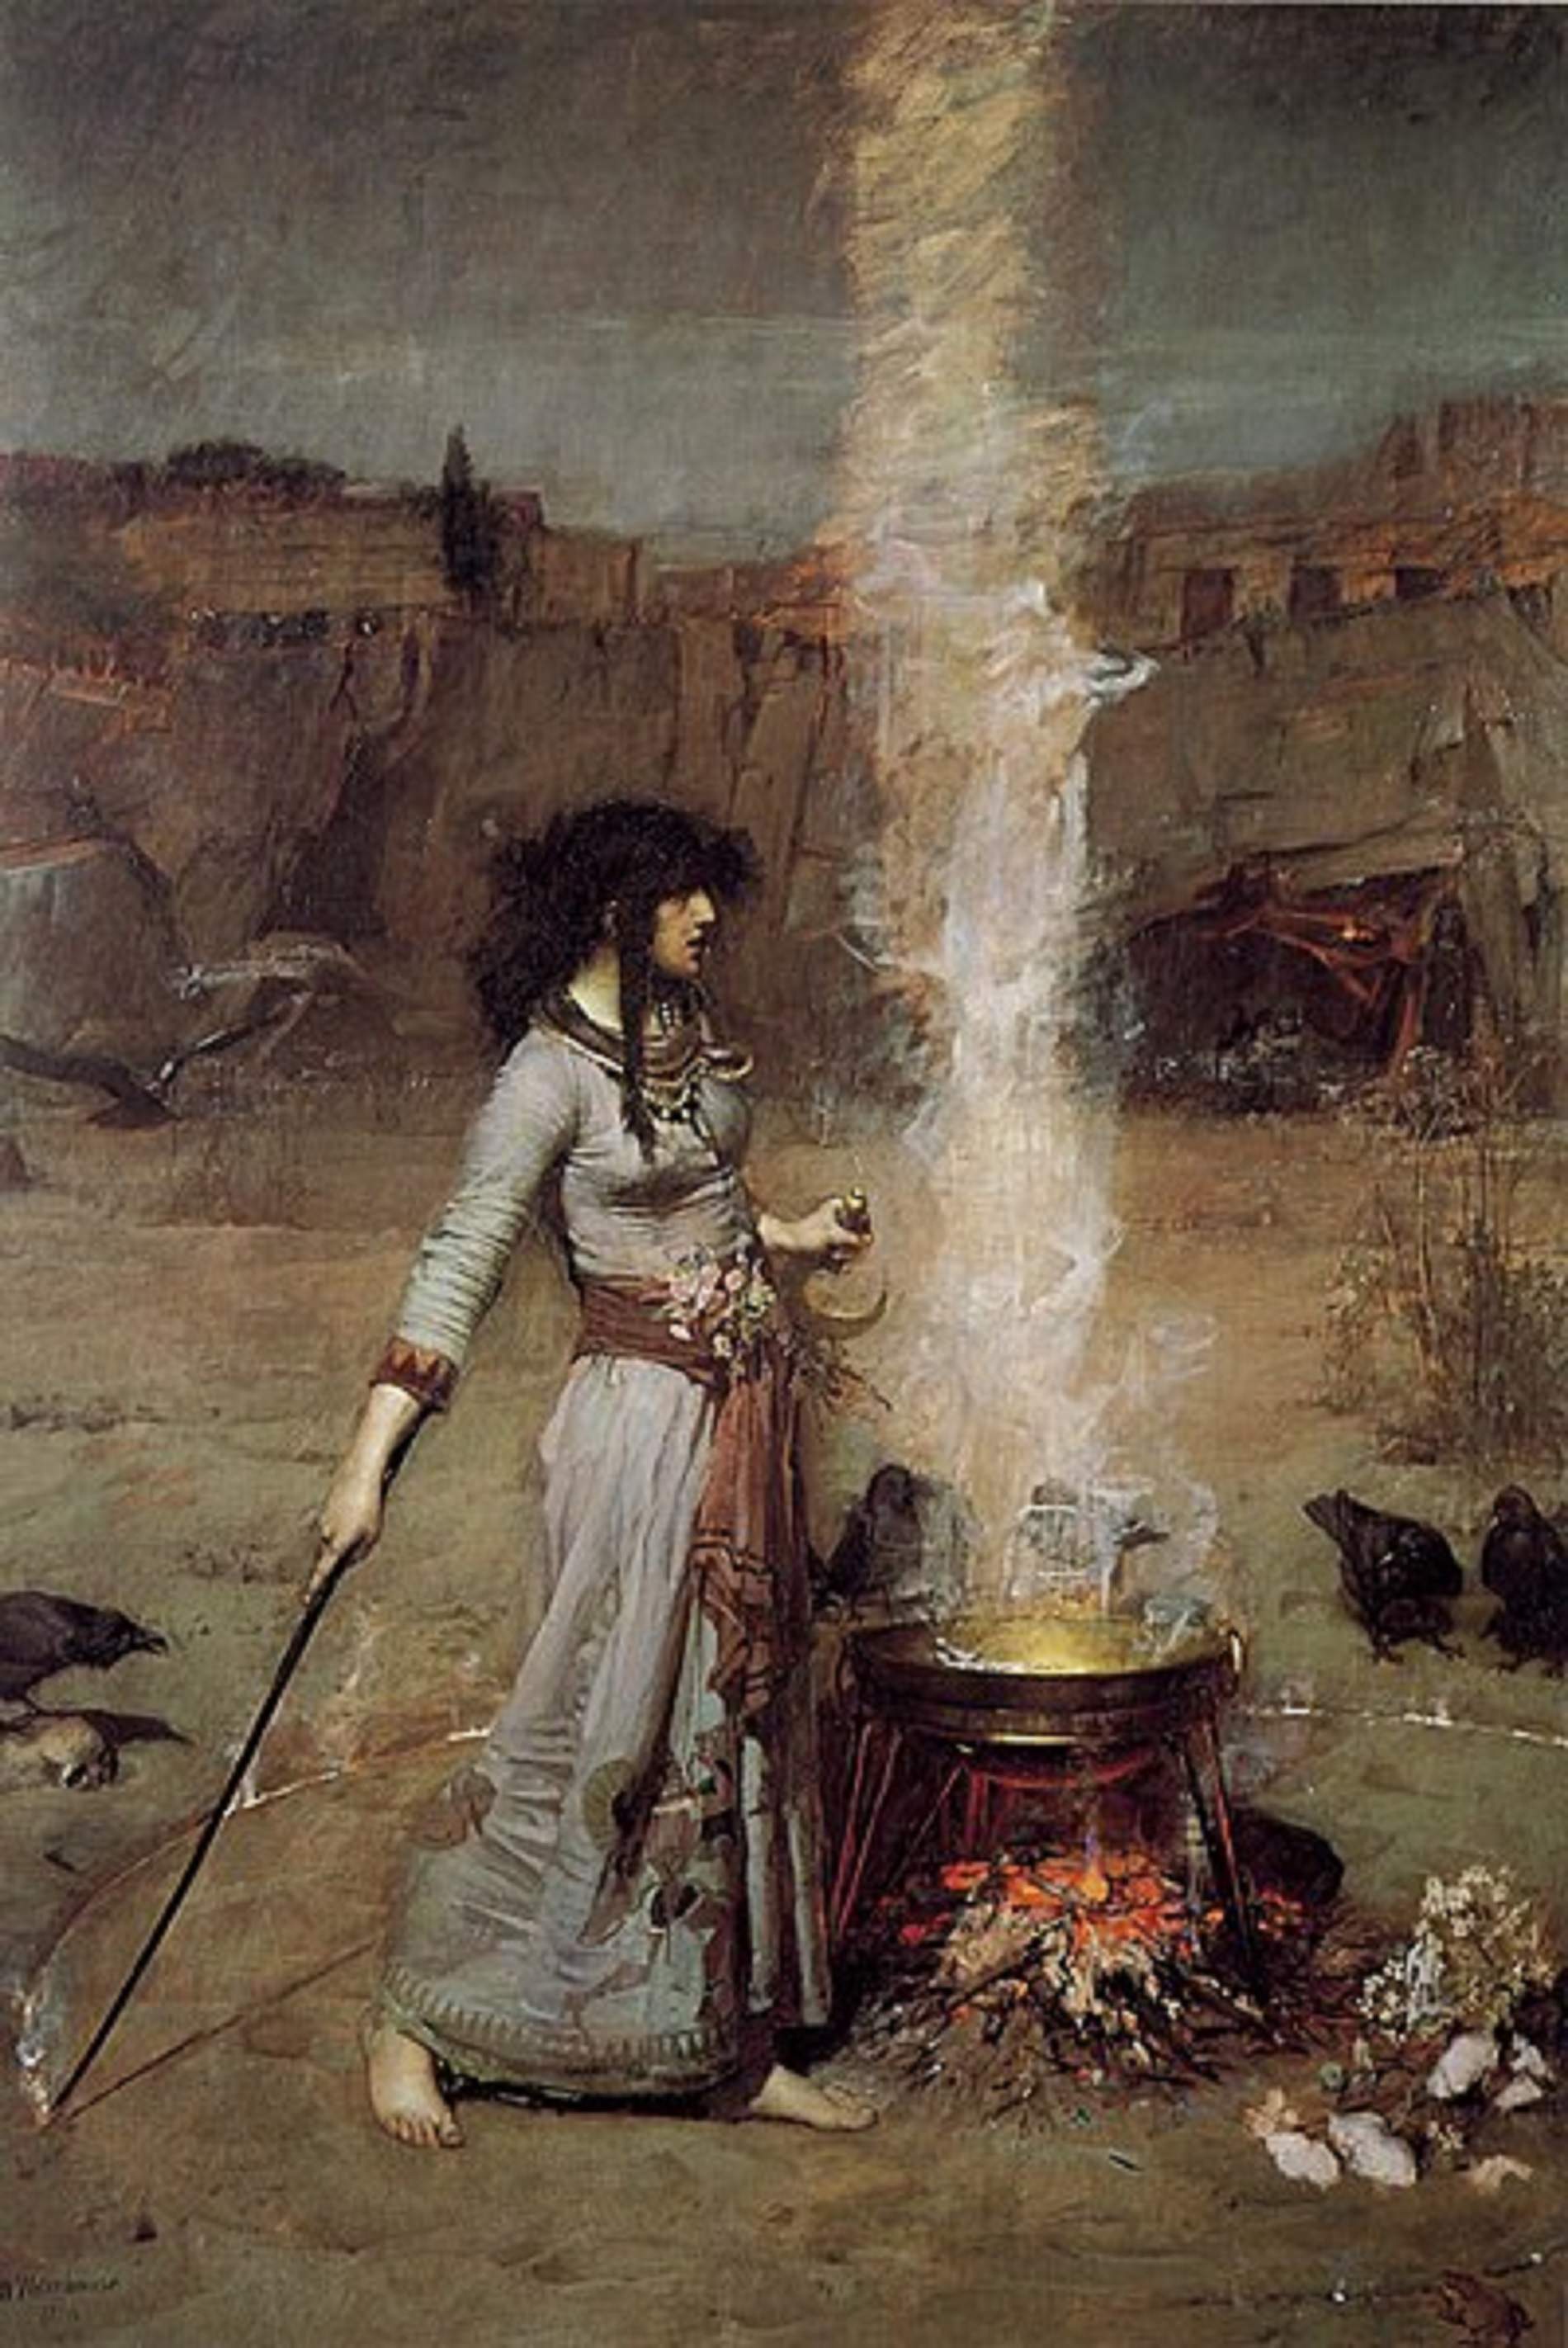 Representació d'una bruixa traçant el cercle magic amb foc (1896). Font Museu Tate Britain. Londres